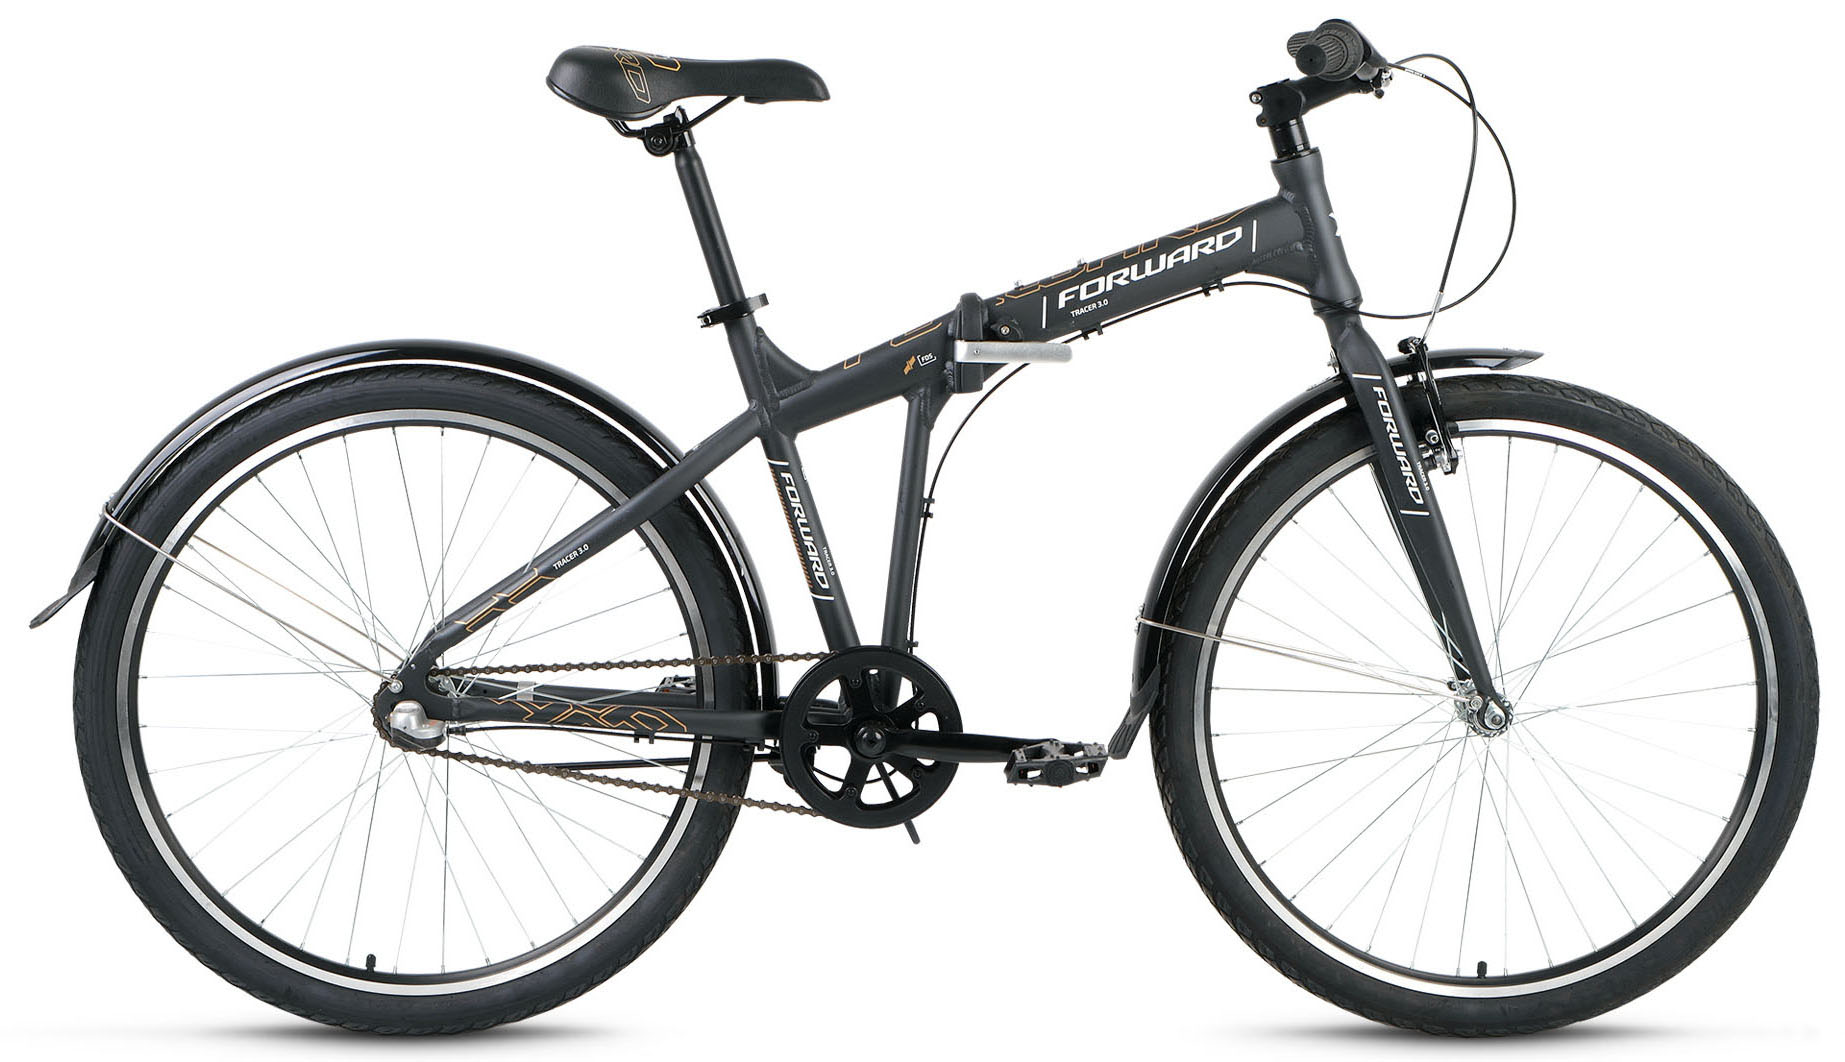  Отзывы о Складном велосипеде Forward Tracer 26 3.0 2019